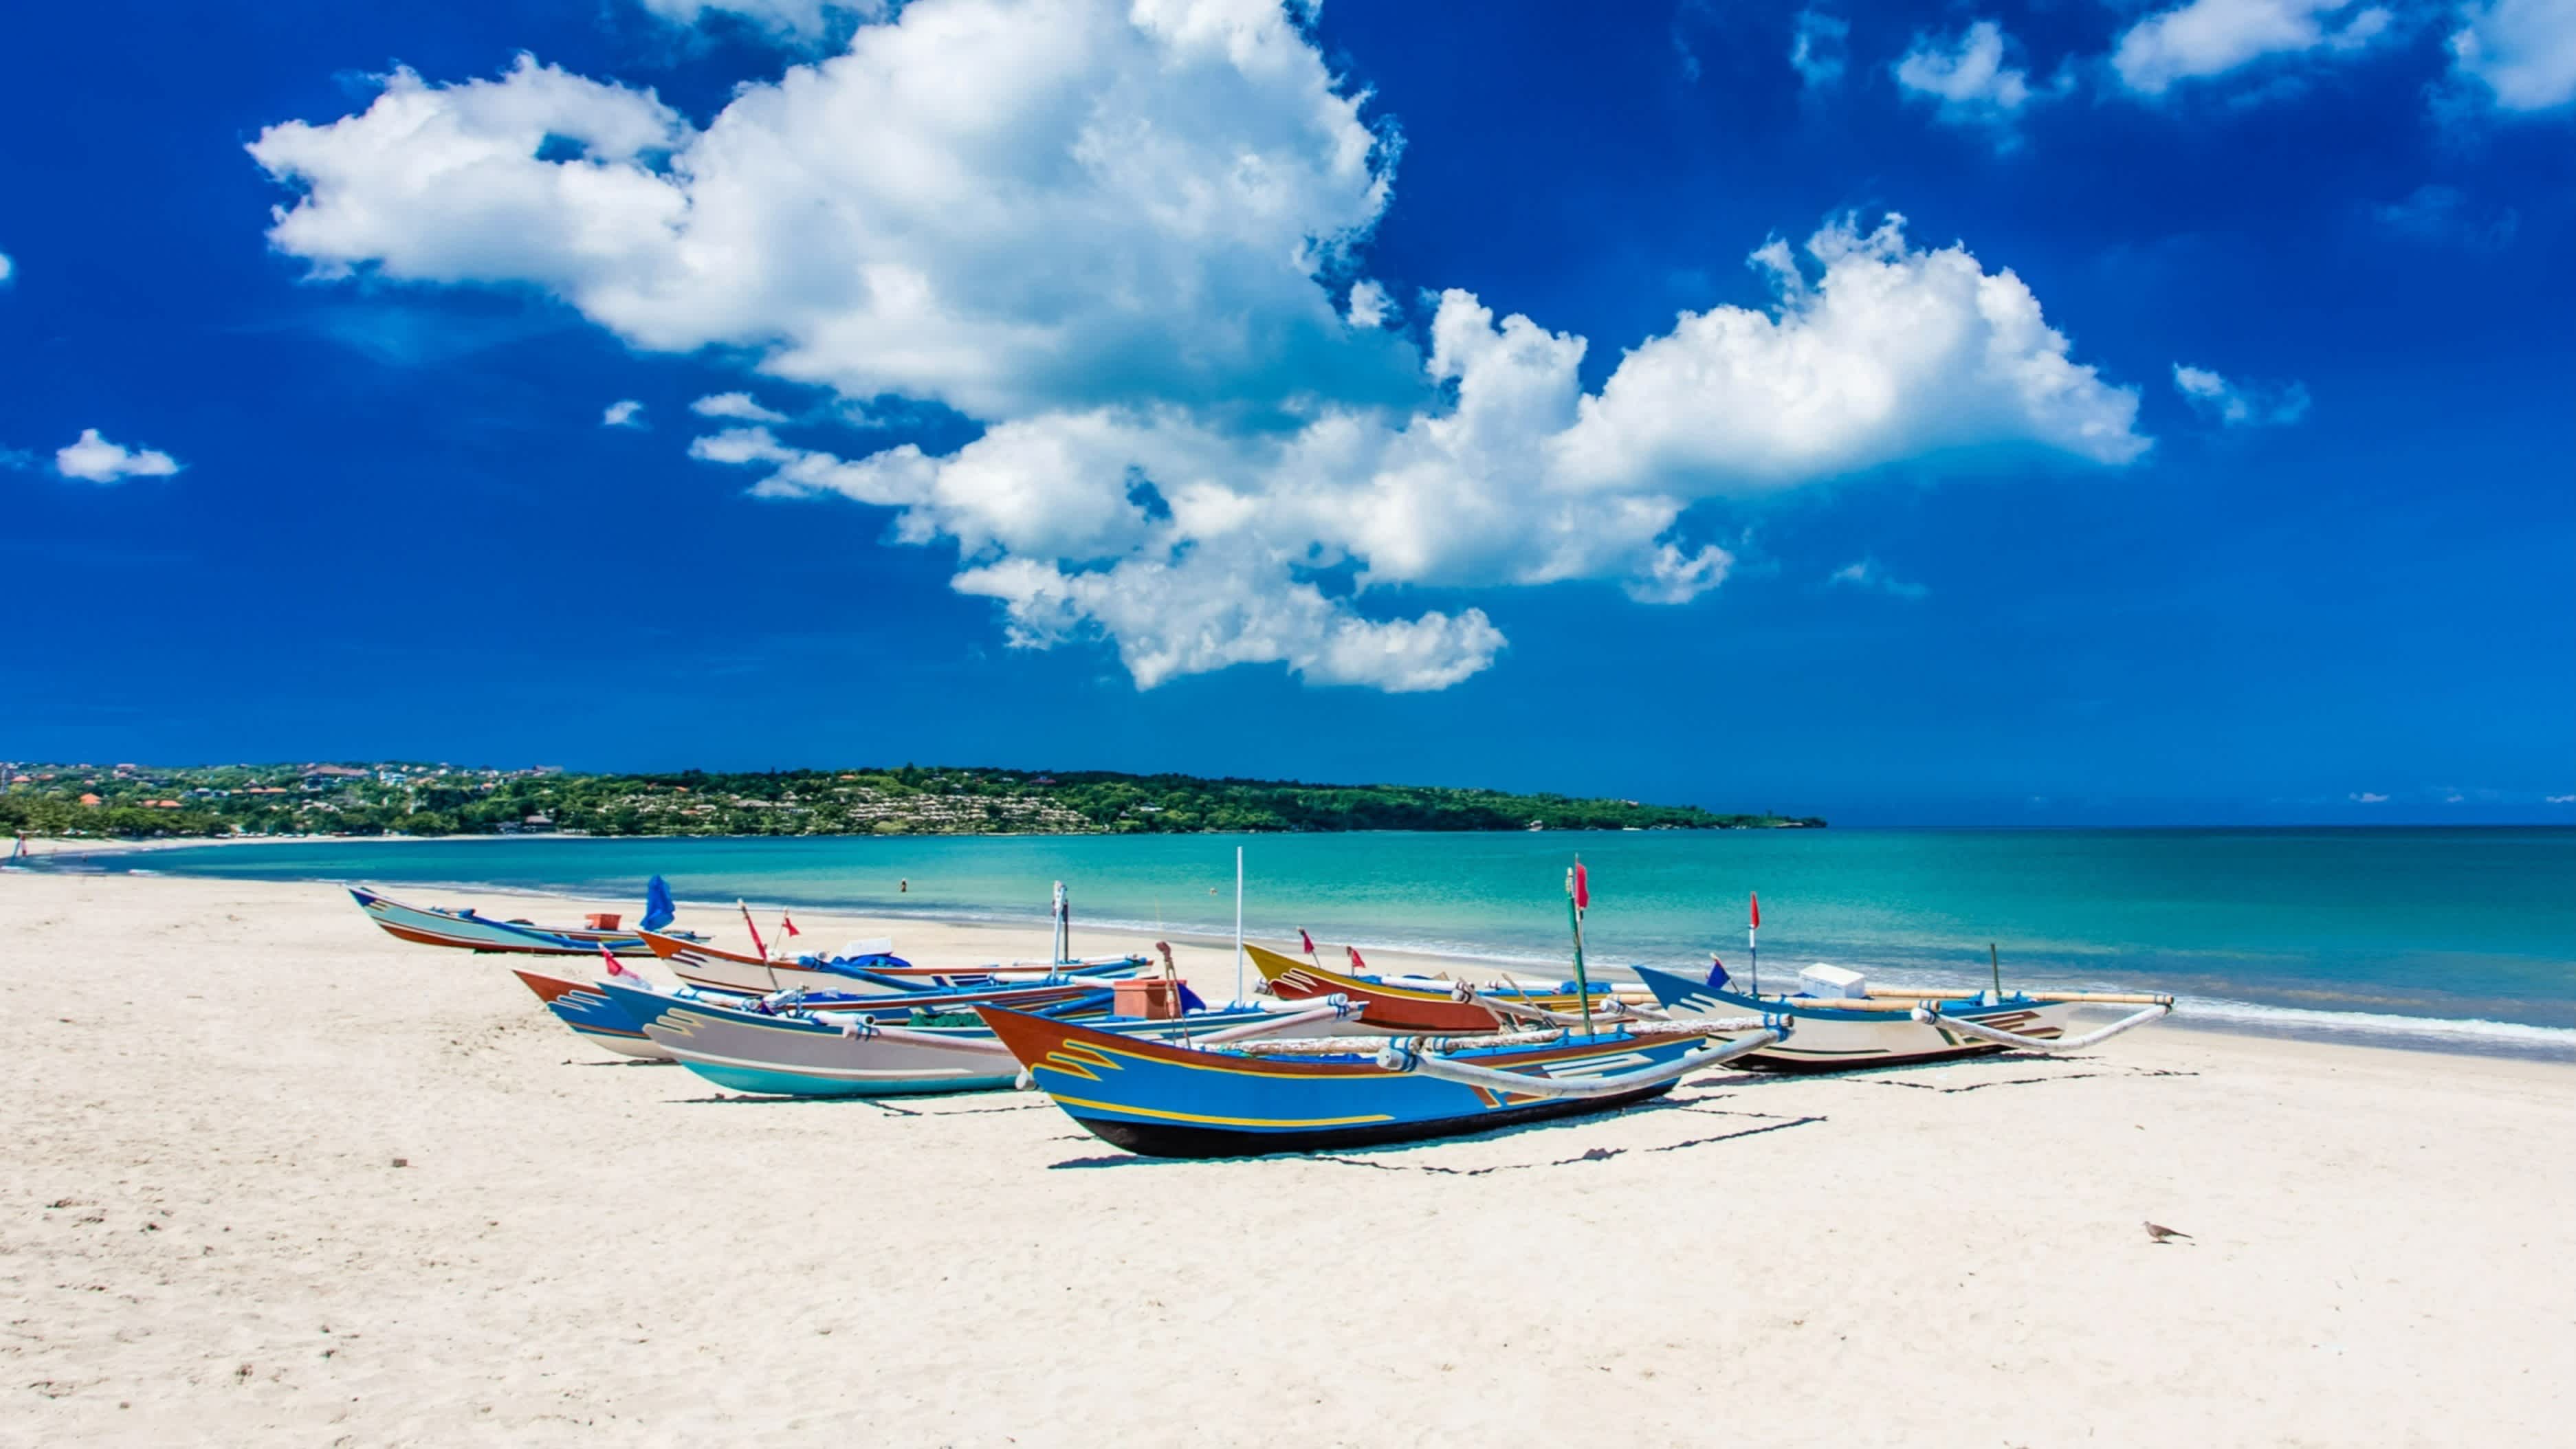 Traditionelle Boote am Sandstrand von Jimbaran, Bali, Indonesia mit Blick auf das Meer sowie einen blauen,wolkigen Himmel und bei Sonnenschein.